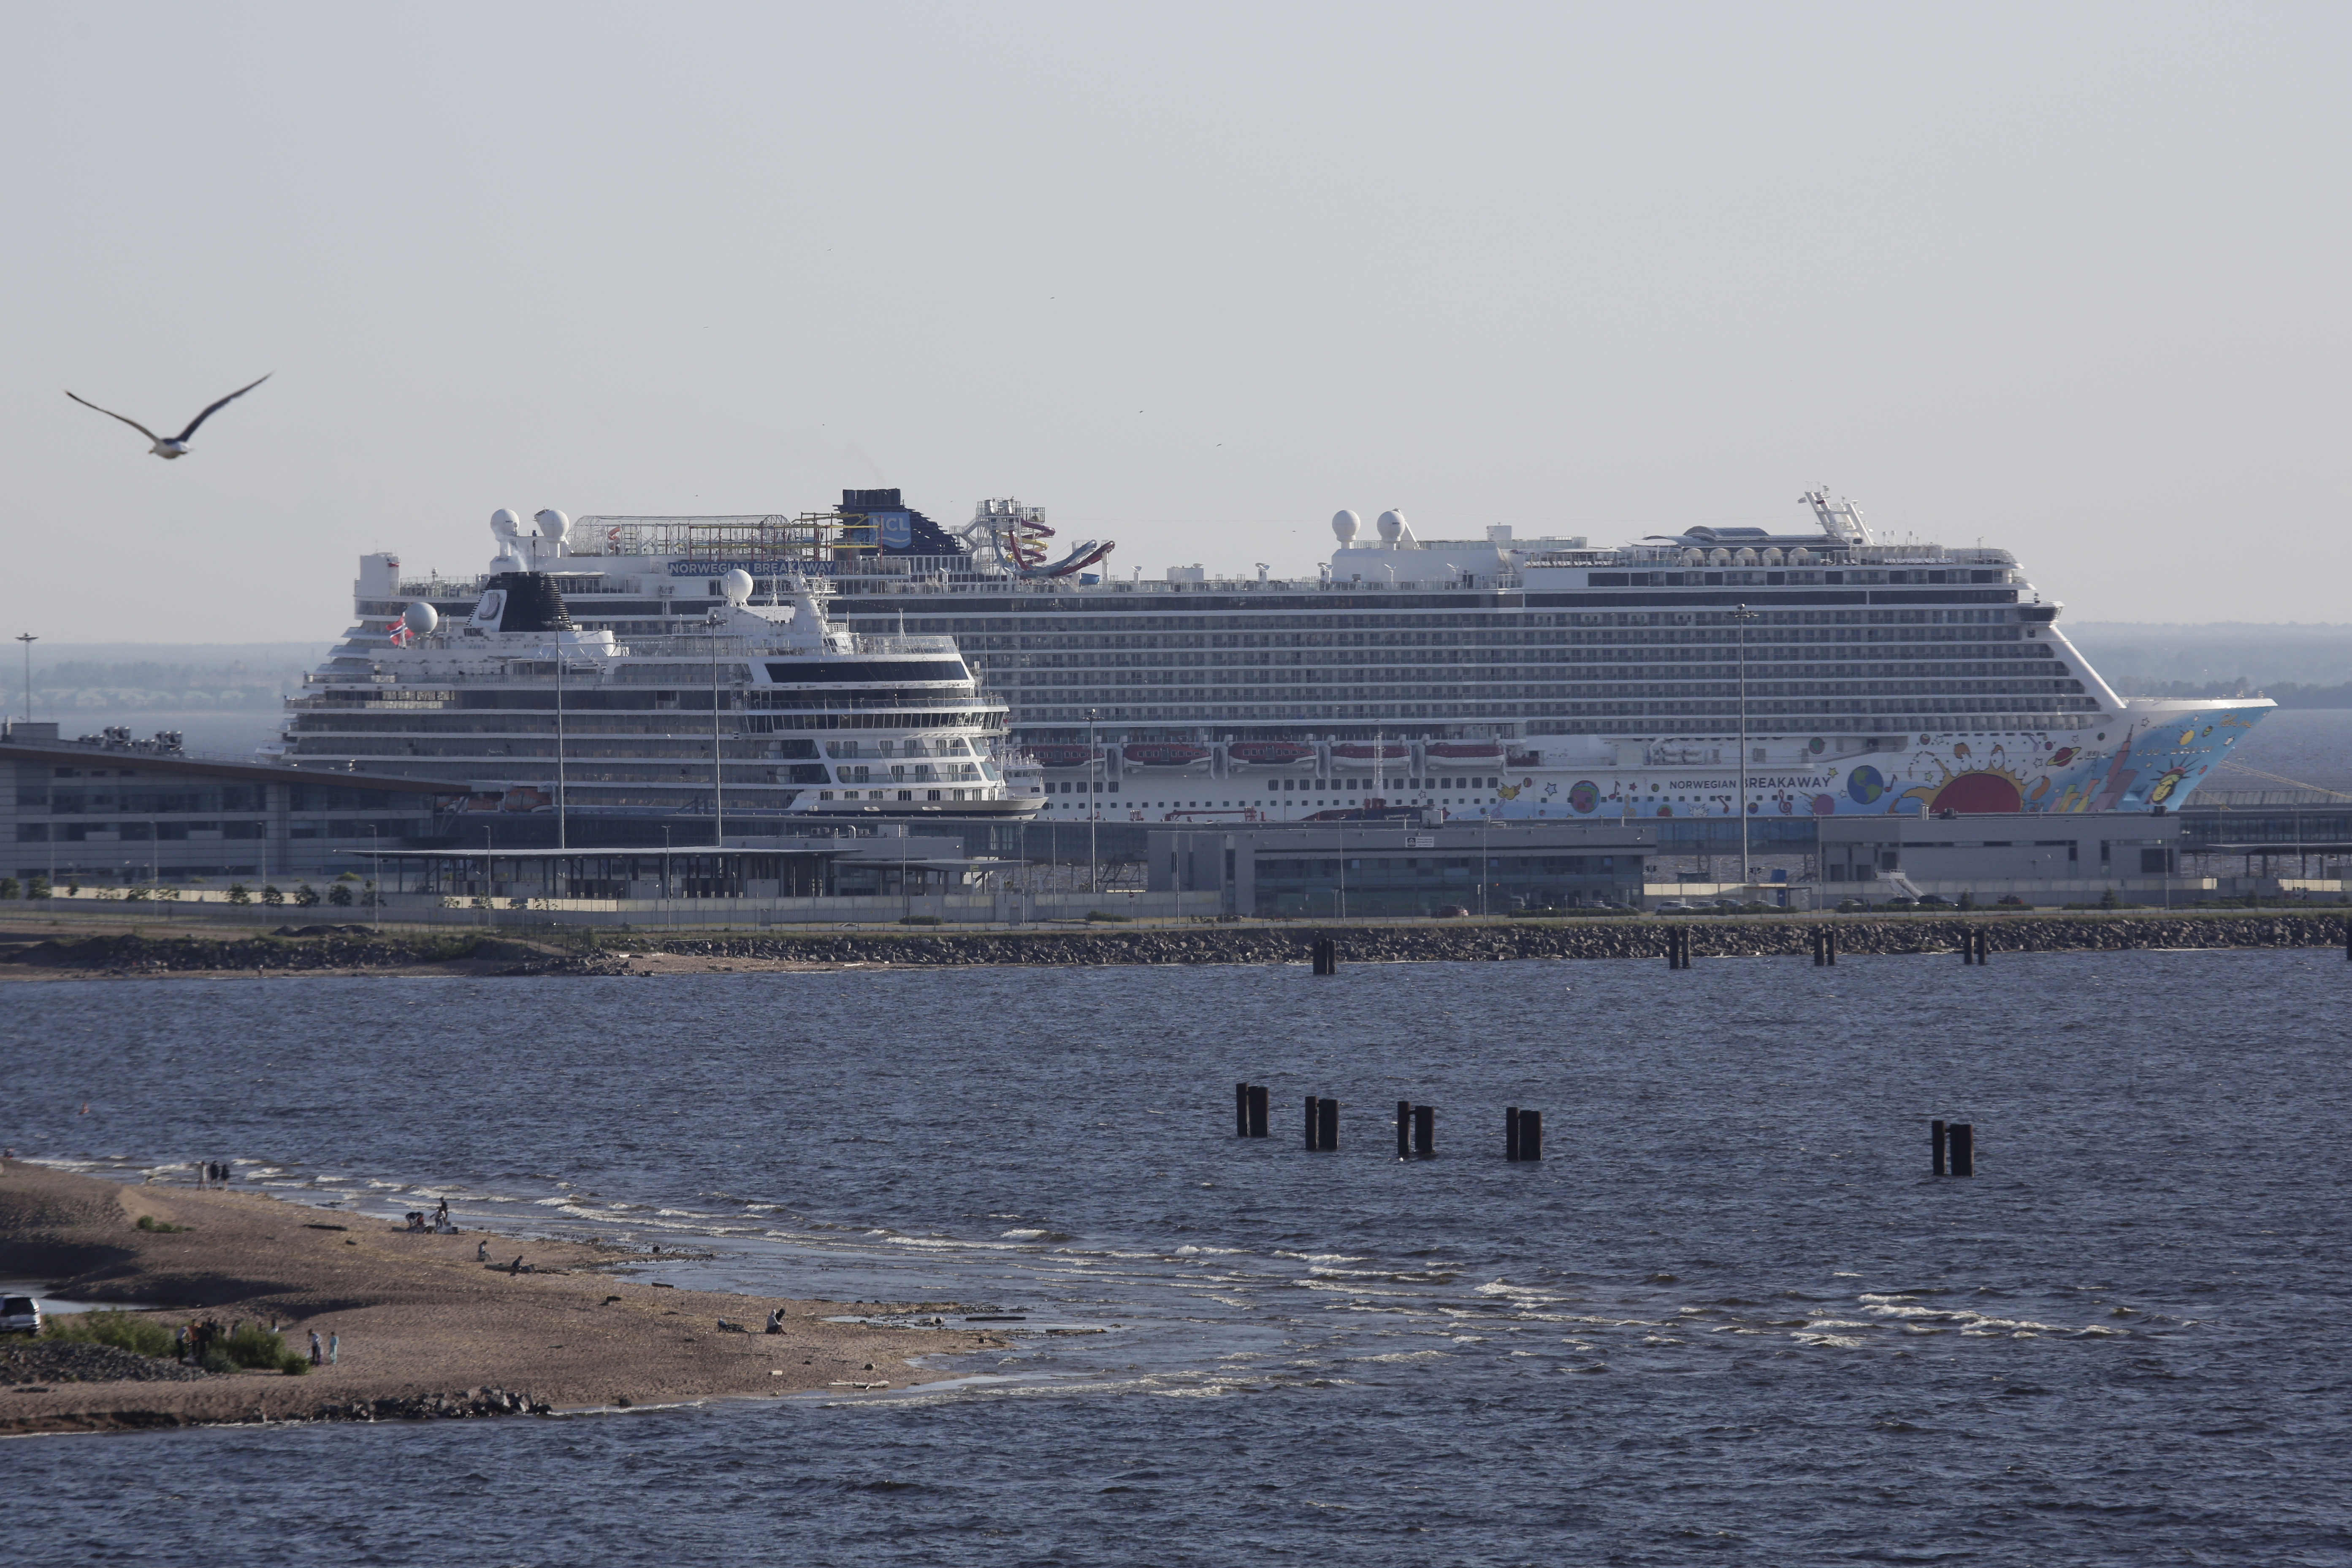 The Norwegian Breakaway cruise ship is seen at Marine Facade passenger port in St. Petersburg